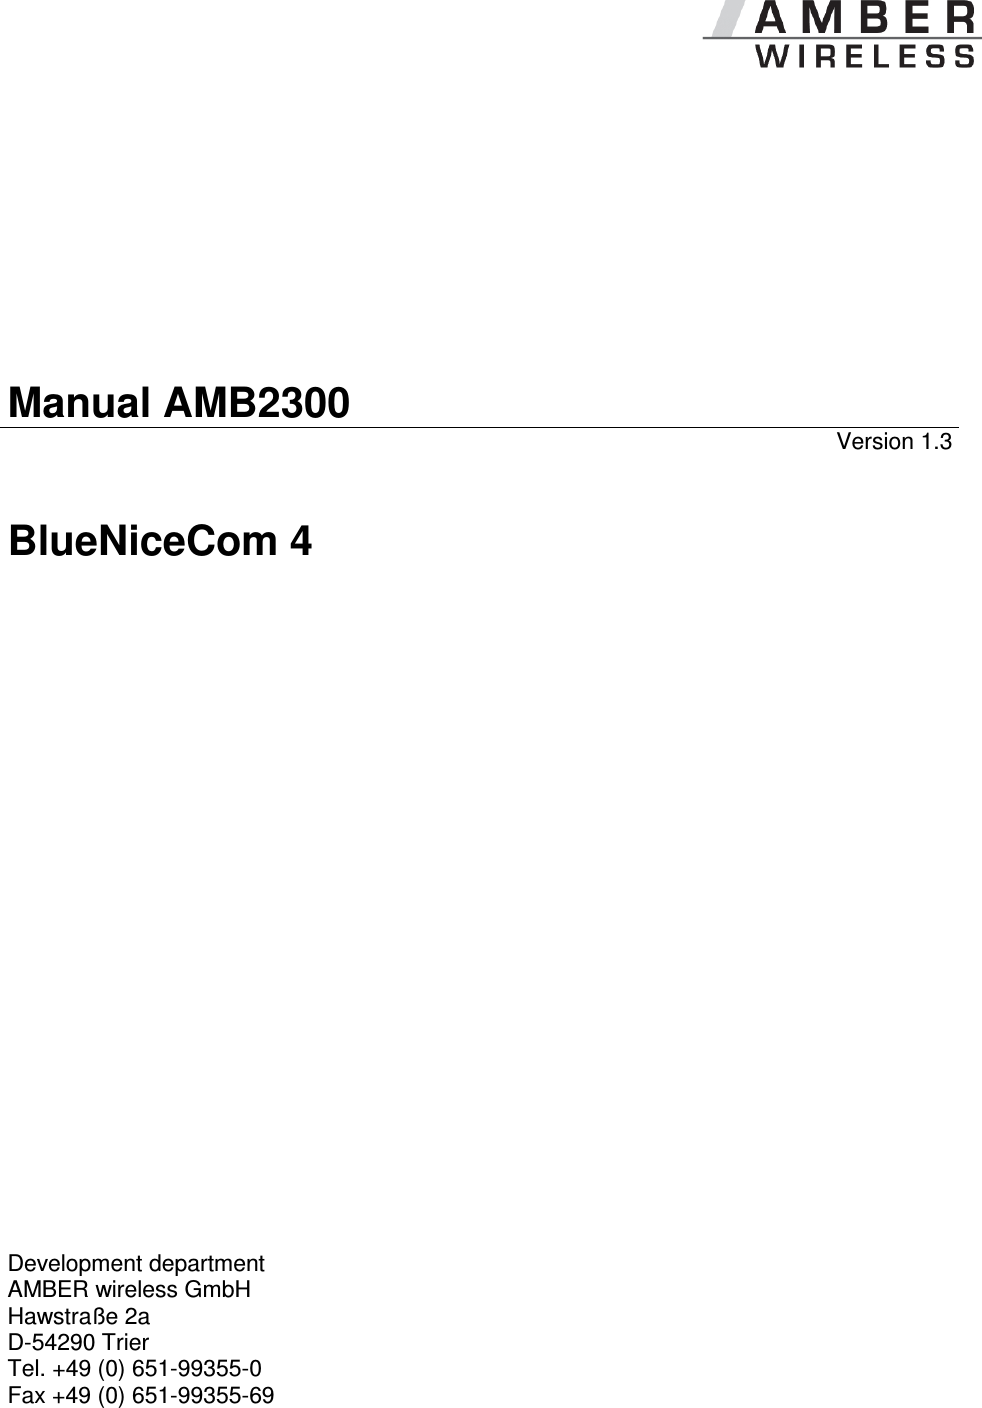            Manual AMB2300 Version 1.3 BlueNiceCom 4                           Development department  AMBER wireless GmbH Hawstraße 2a D-54290 Trier Tel. +49 (0) 651-99355-0 Fax +49 (0) 651-99355-69   